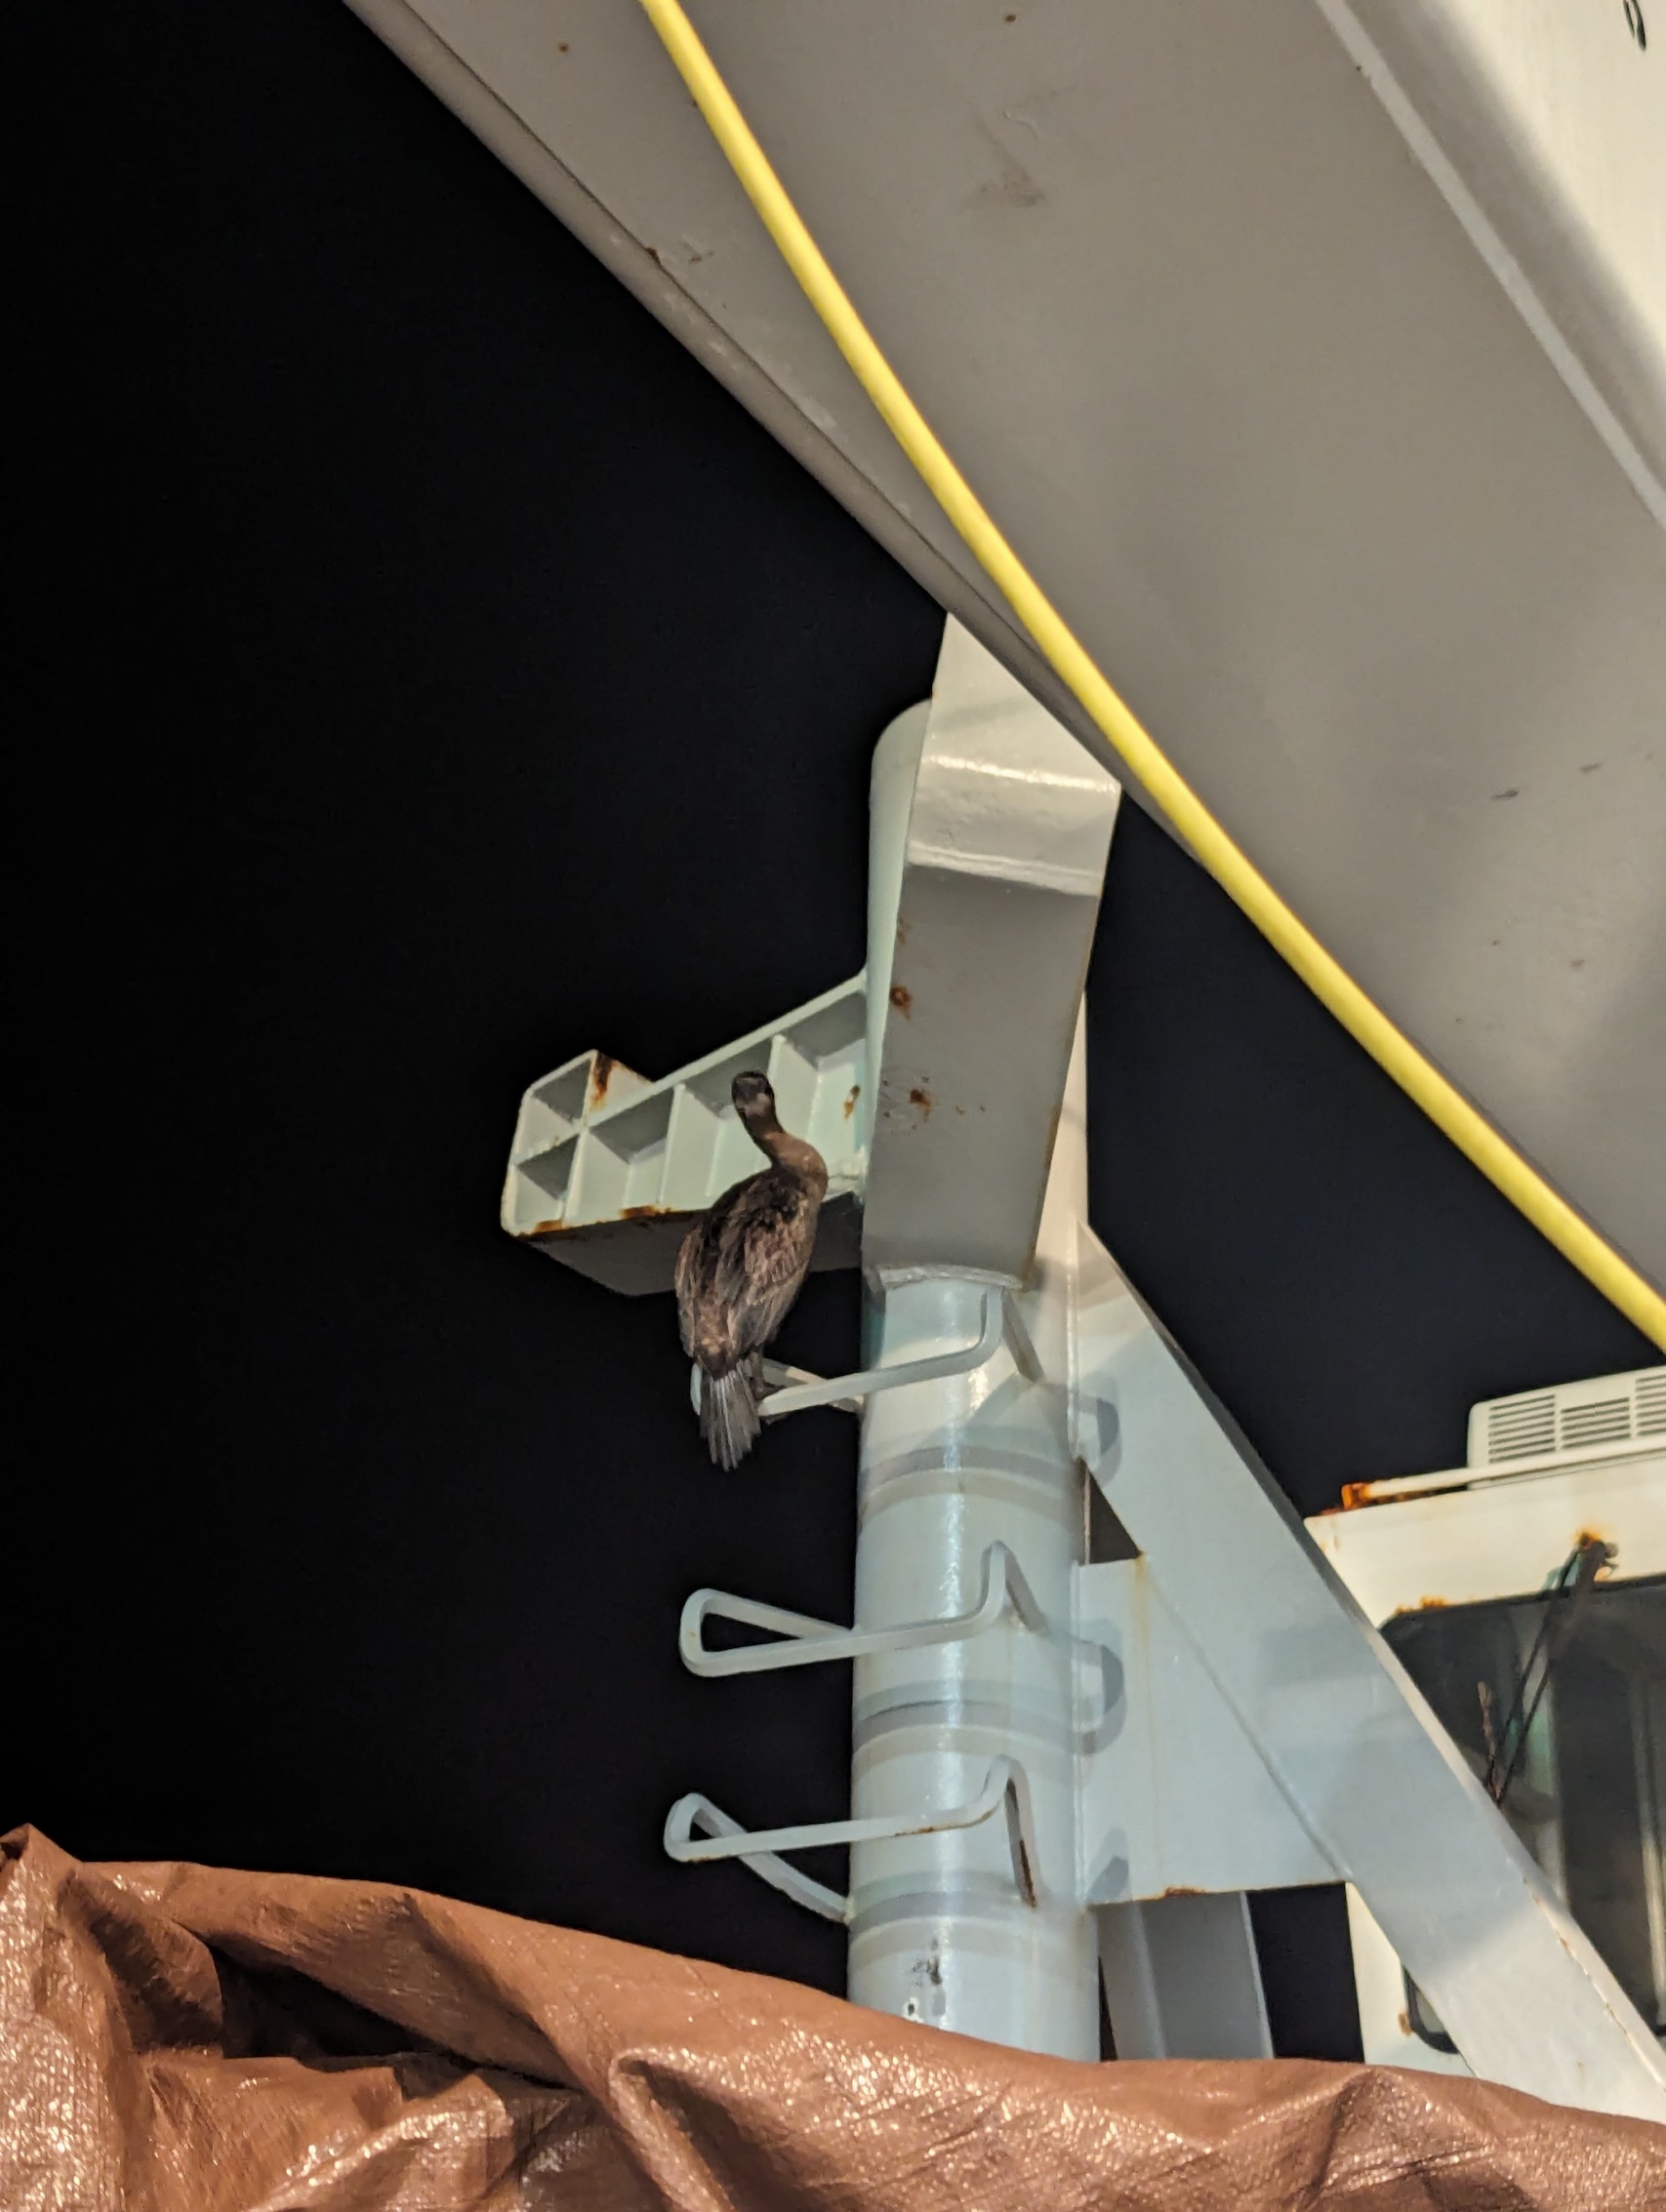 a cormorant lingering on ladder on deck